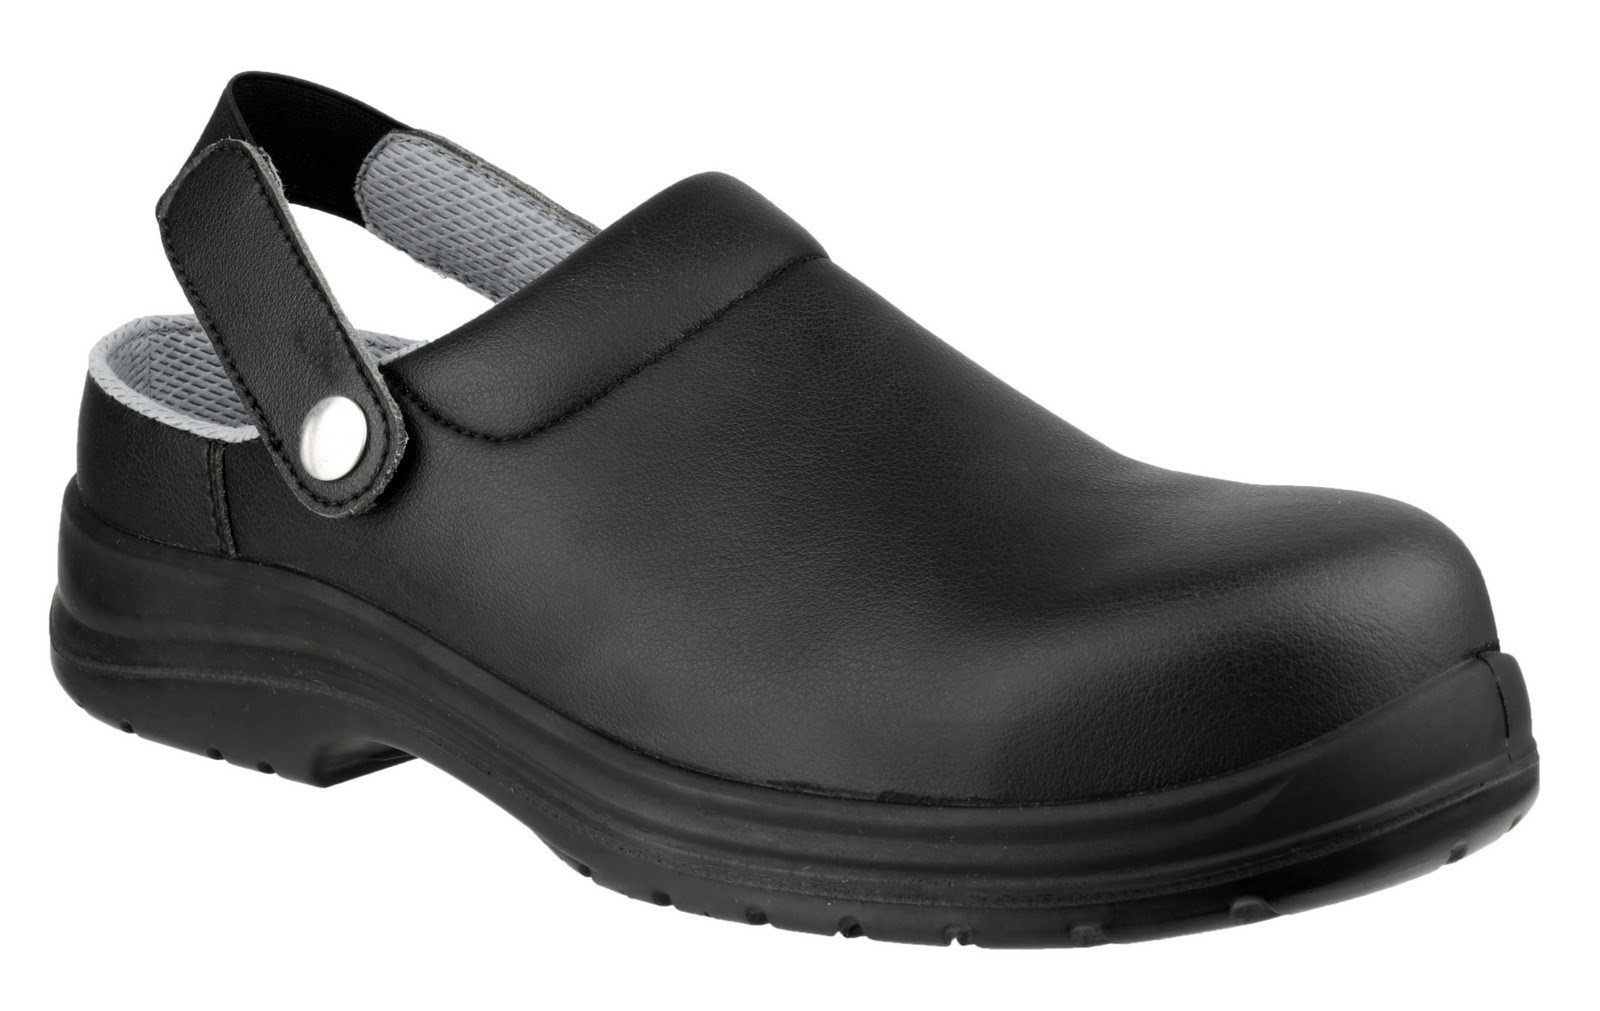 Amblers Unisex Safety Antistatic Slip on Clog Shoe Black 21896 - Black 3